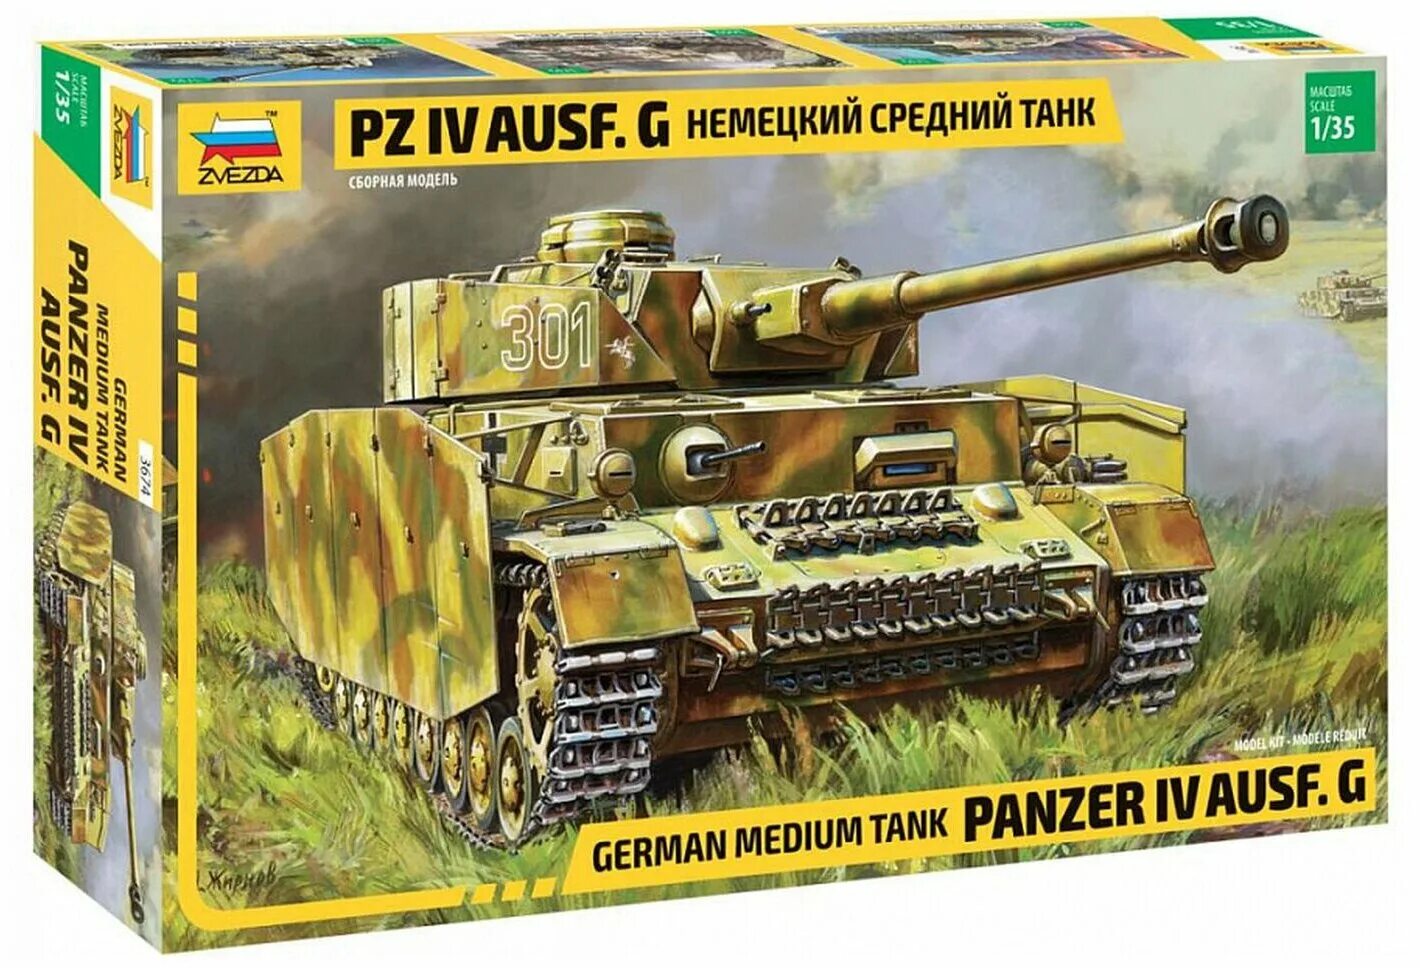 Немецкий средний танк. Сборная модель zvezda 3674 немецкий средний танк t-IV G. PZ 4 Ausf. G 1/35 звезда. 3674 Немецкий танк "t-IV G".